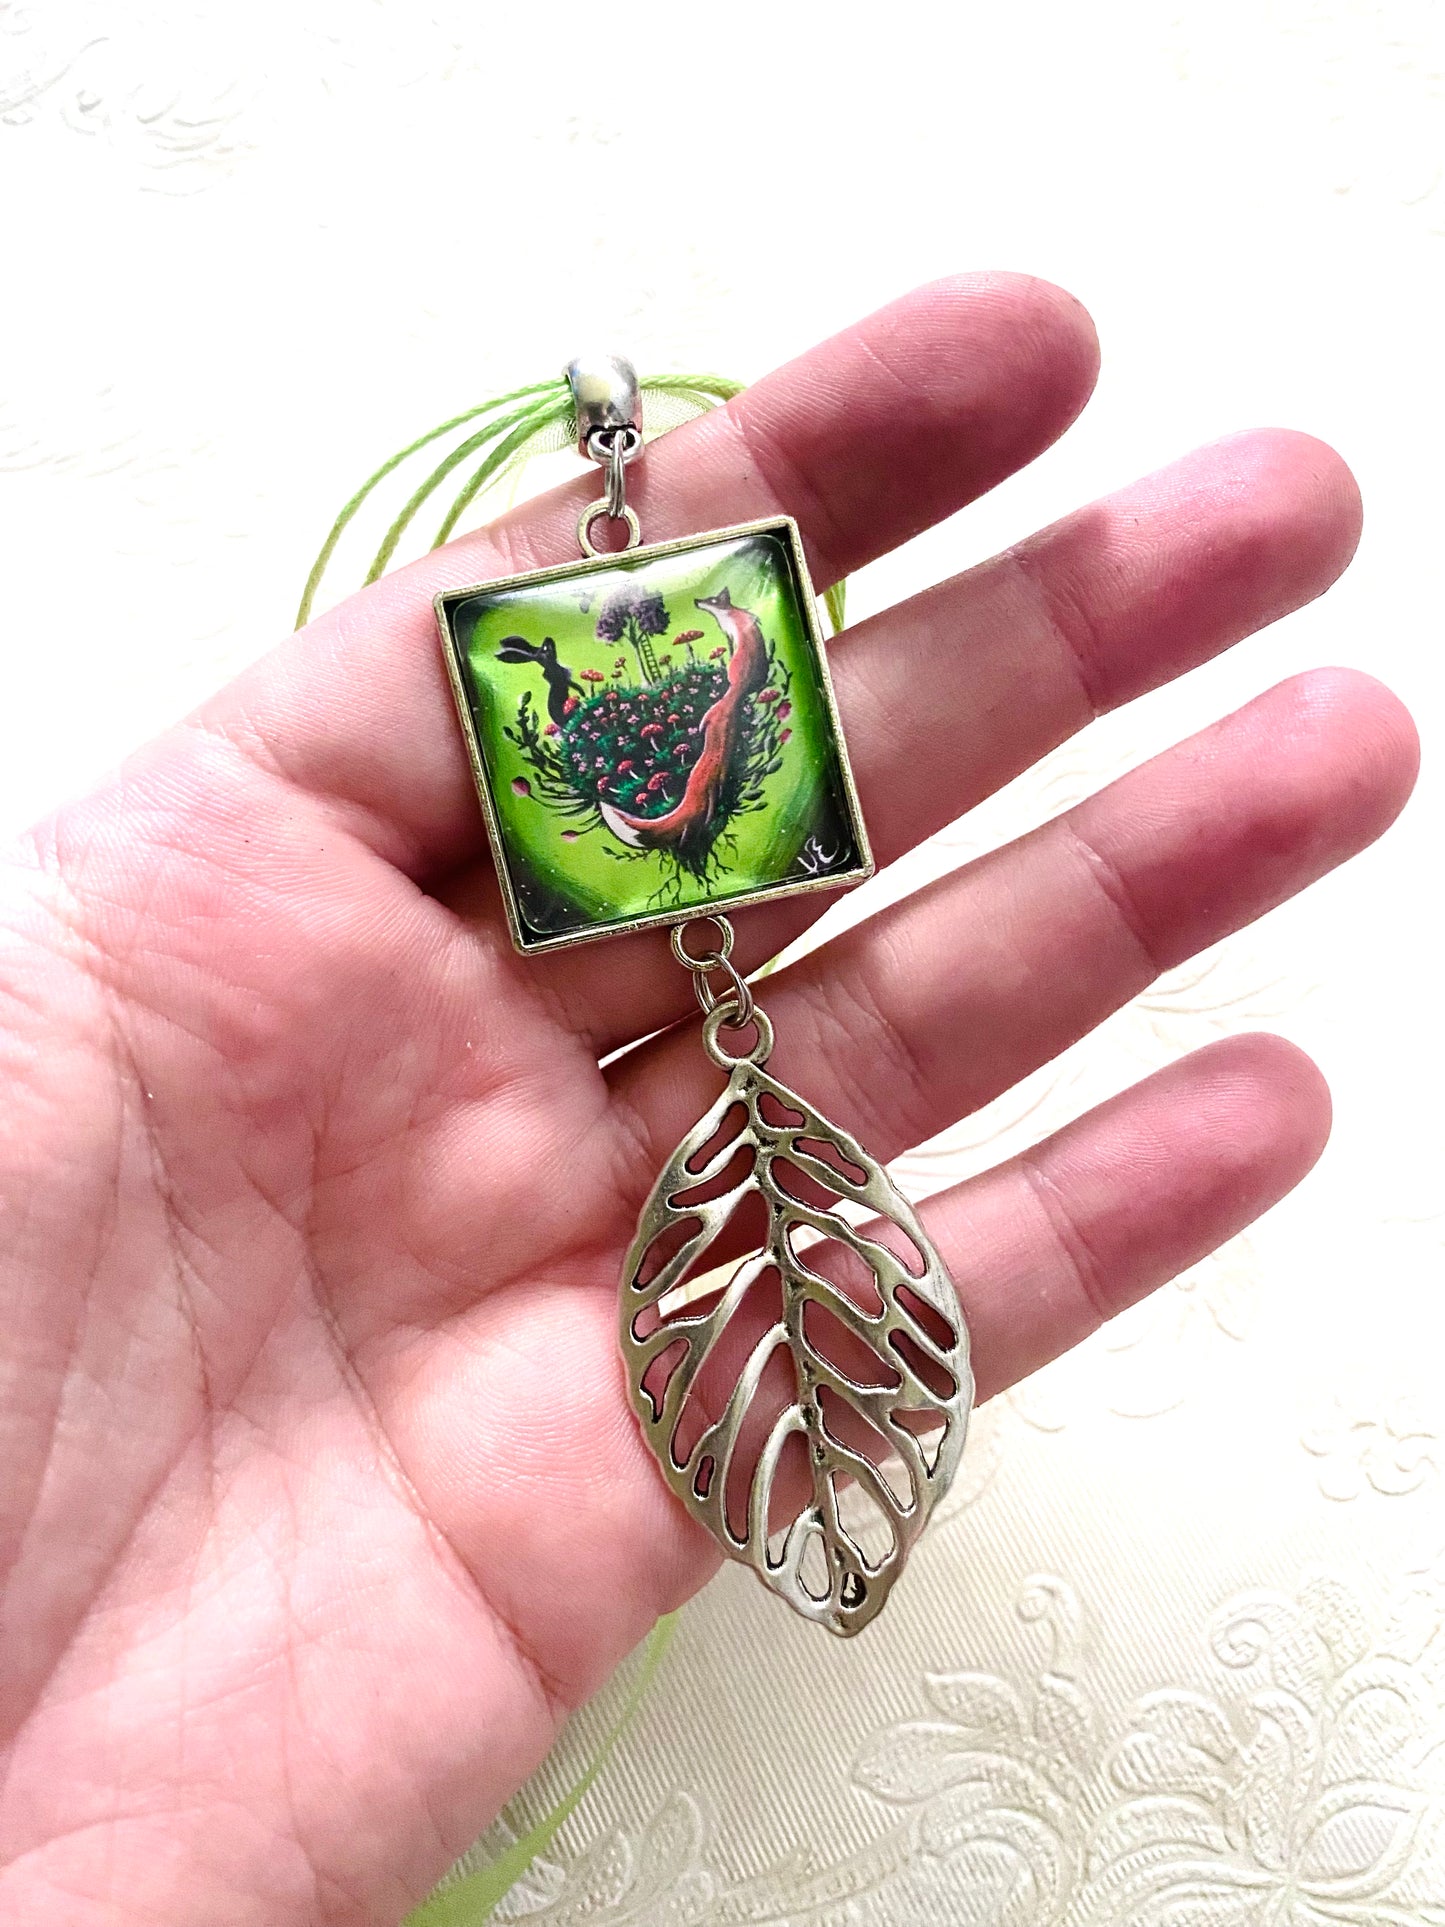 Square pendant with big leaf charm / Négyzetes medál nagy levél charmmal, egyedi grafikával